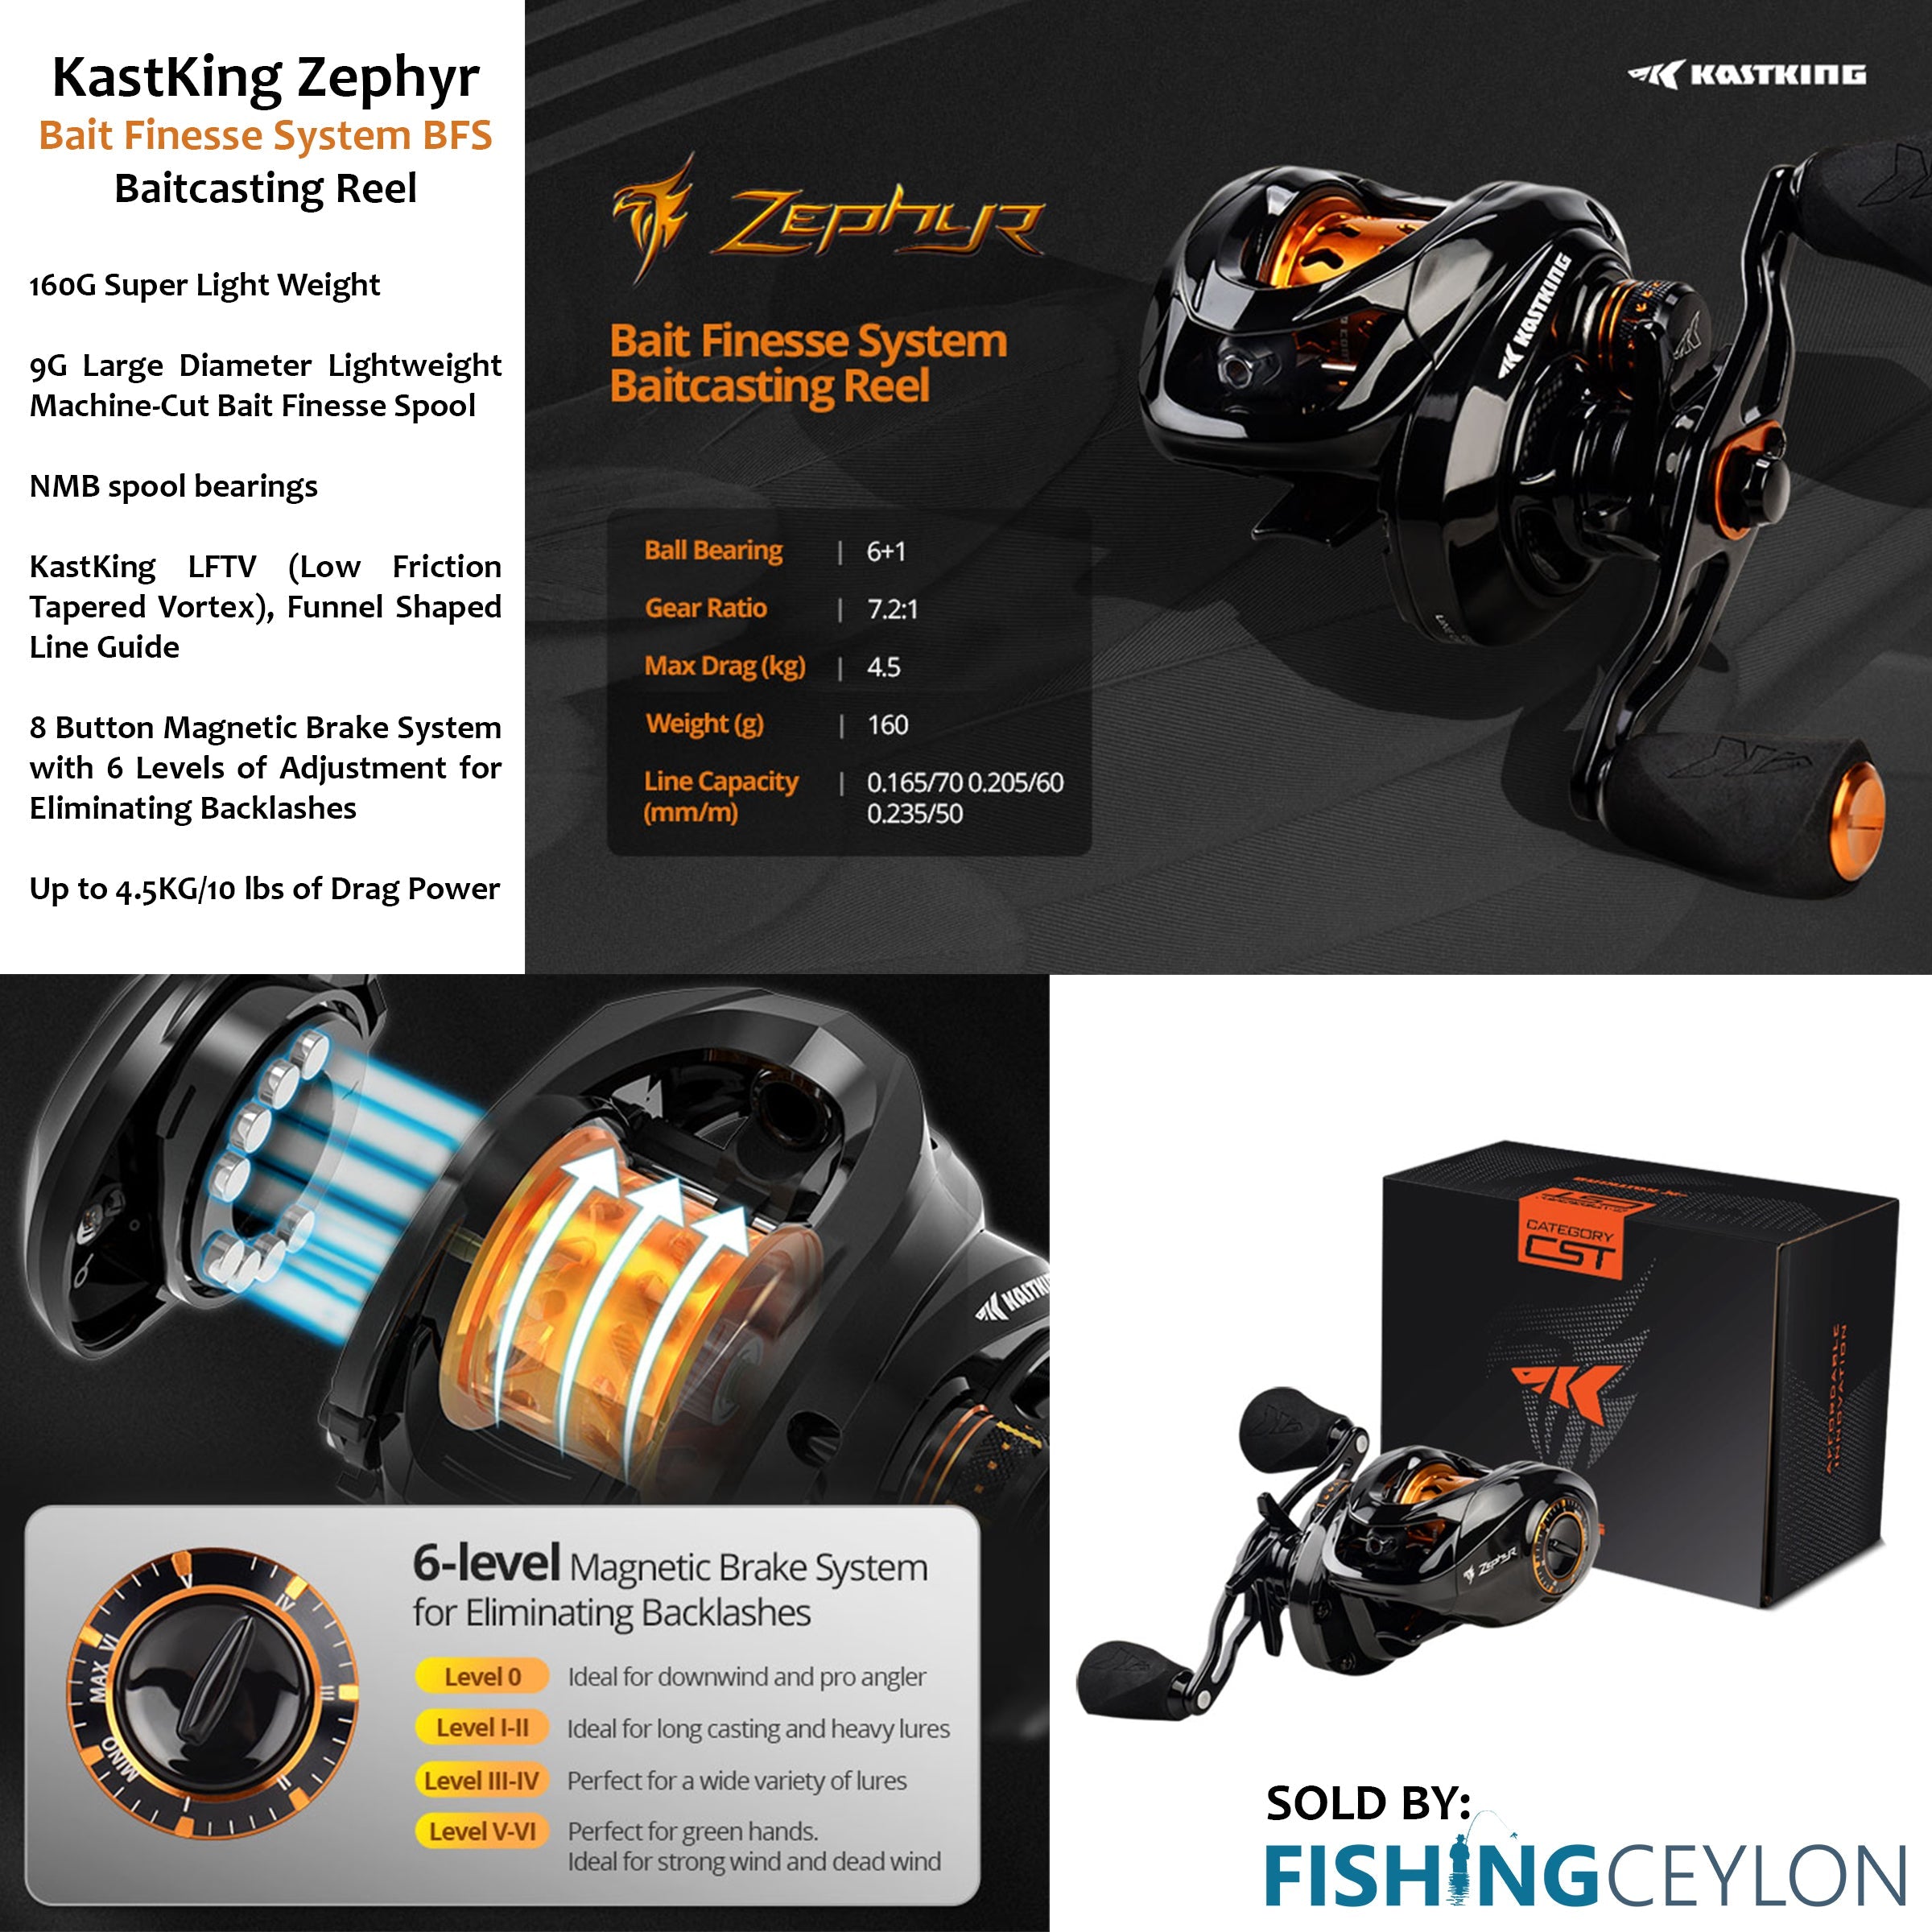 Kastking Zephyr BFS Reel (Bait Finesse System): First Impressions